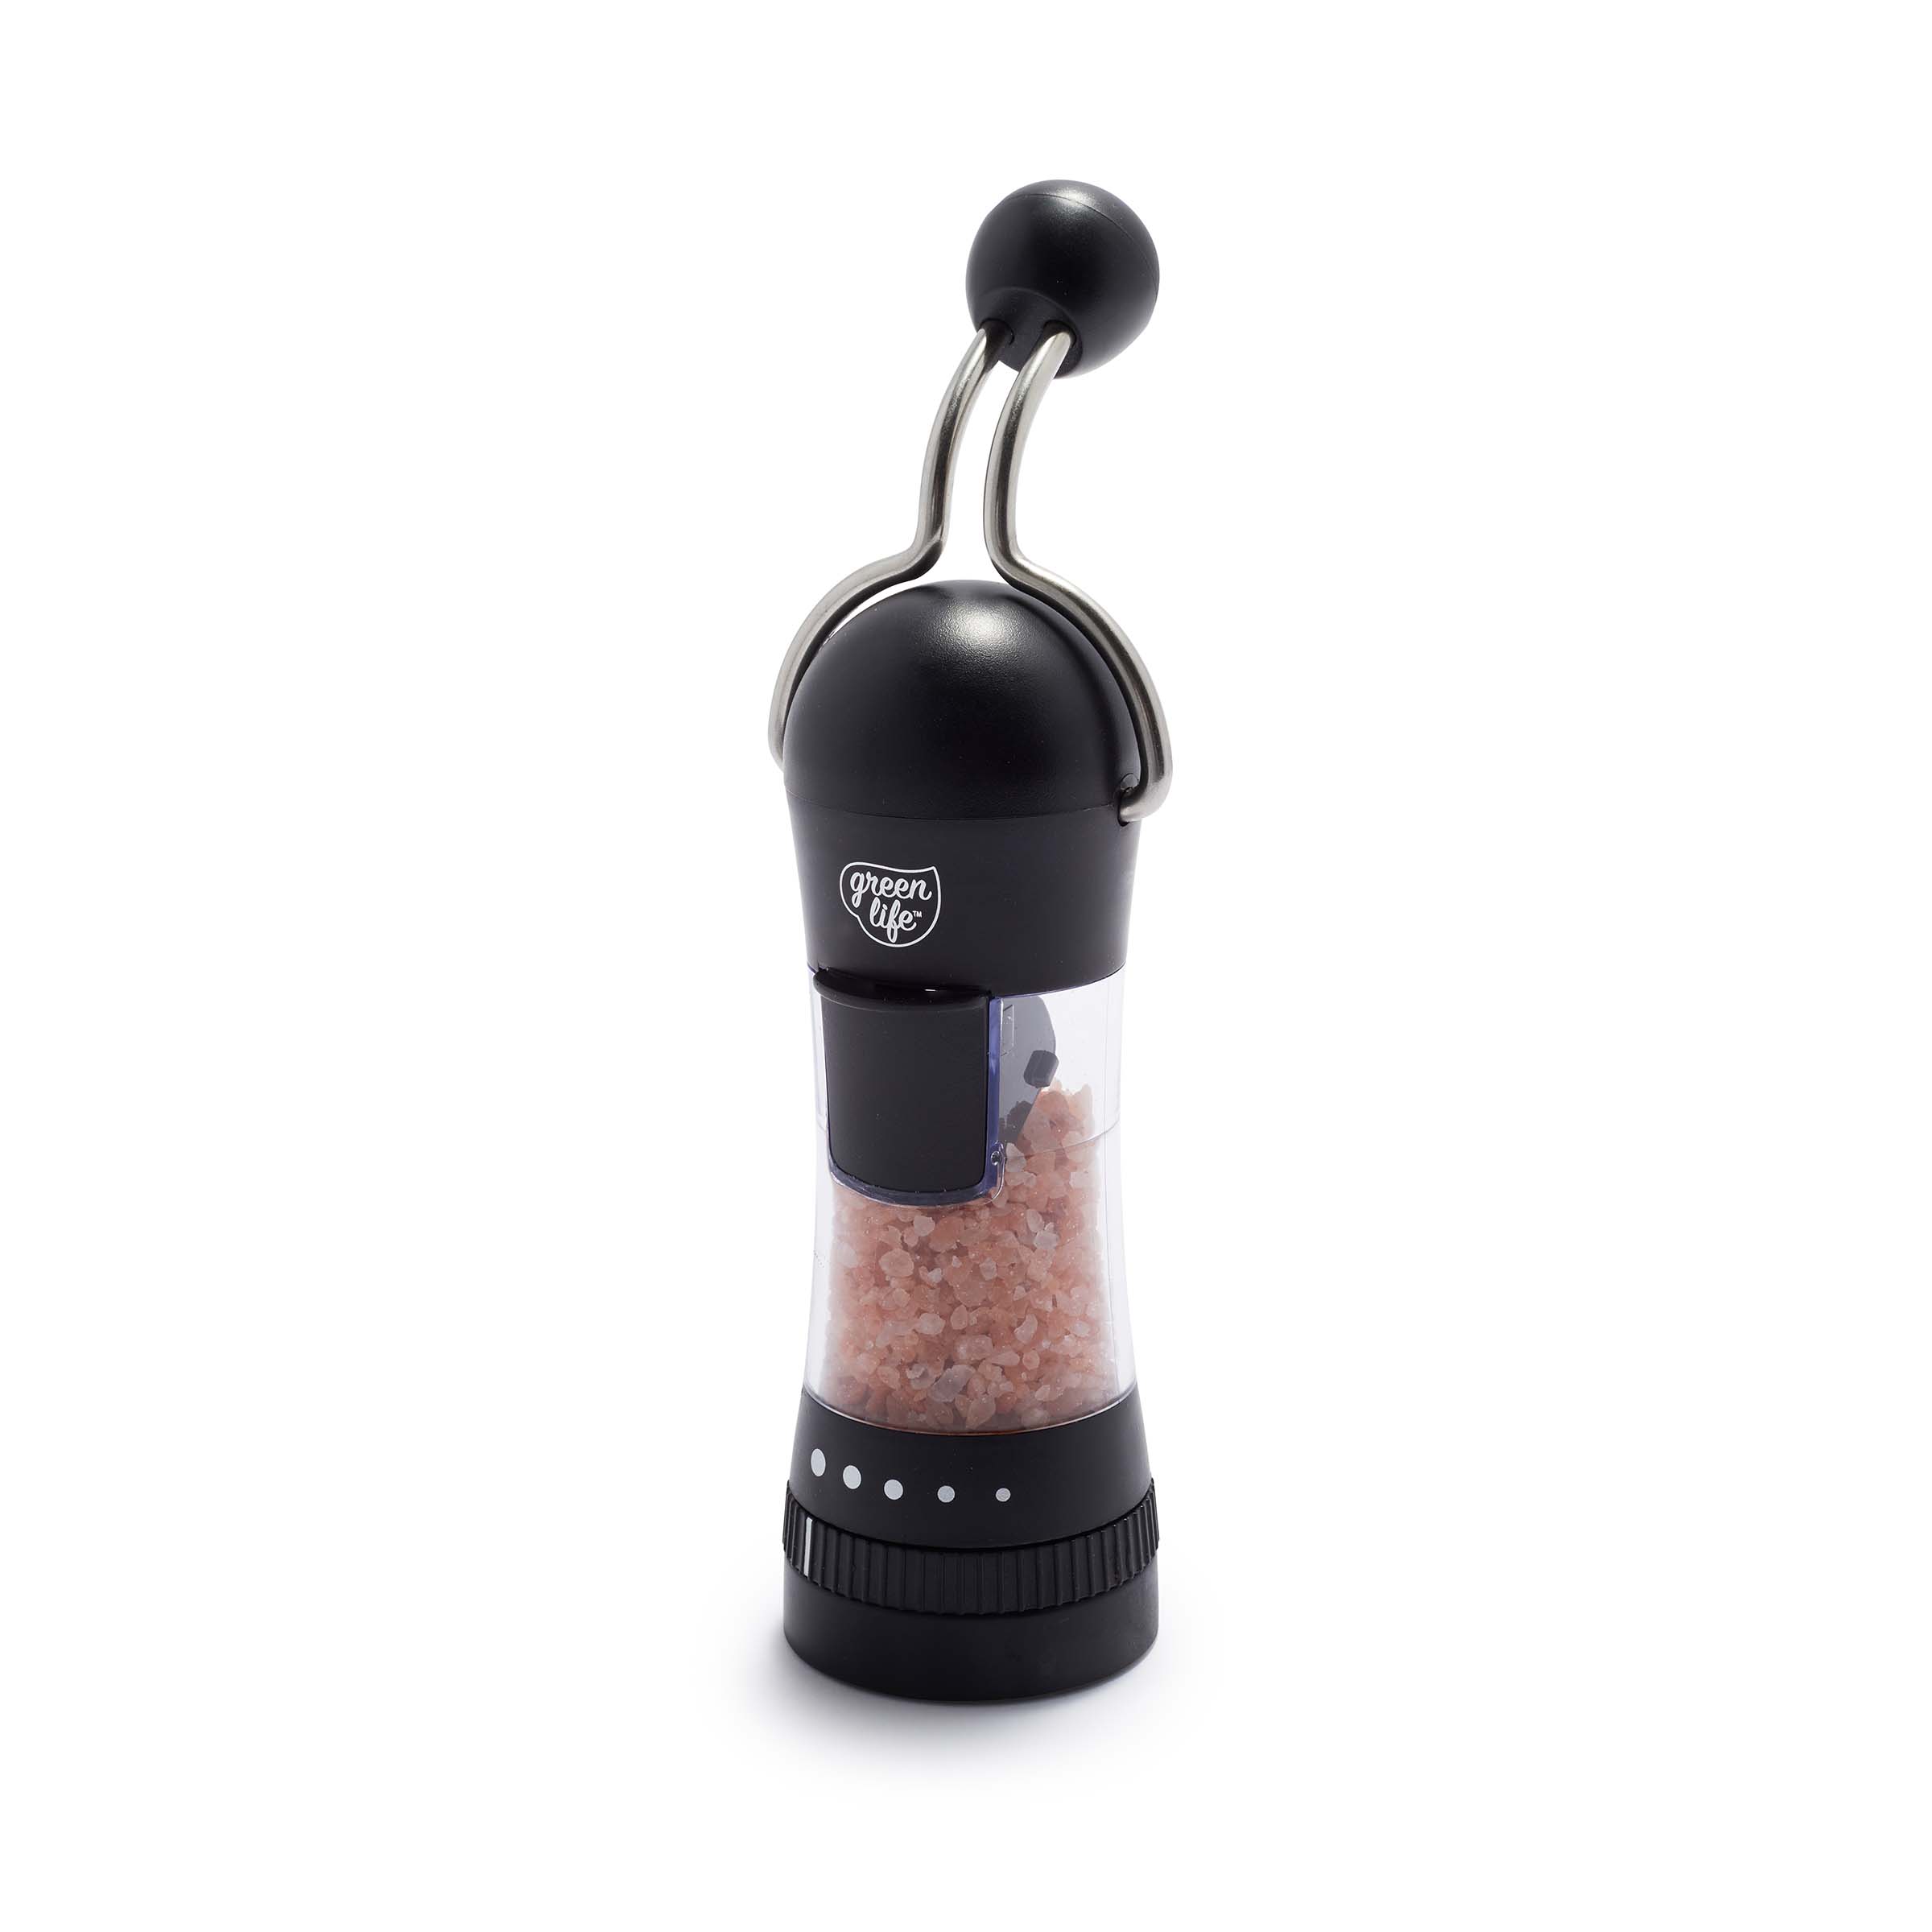 Salt & Pepper Electric Grinder Black - Global Offers